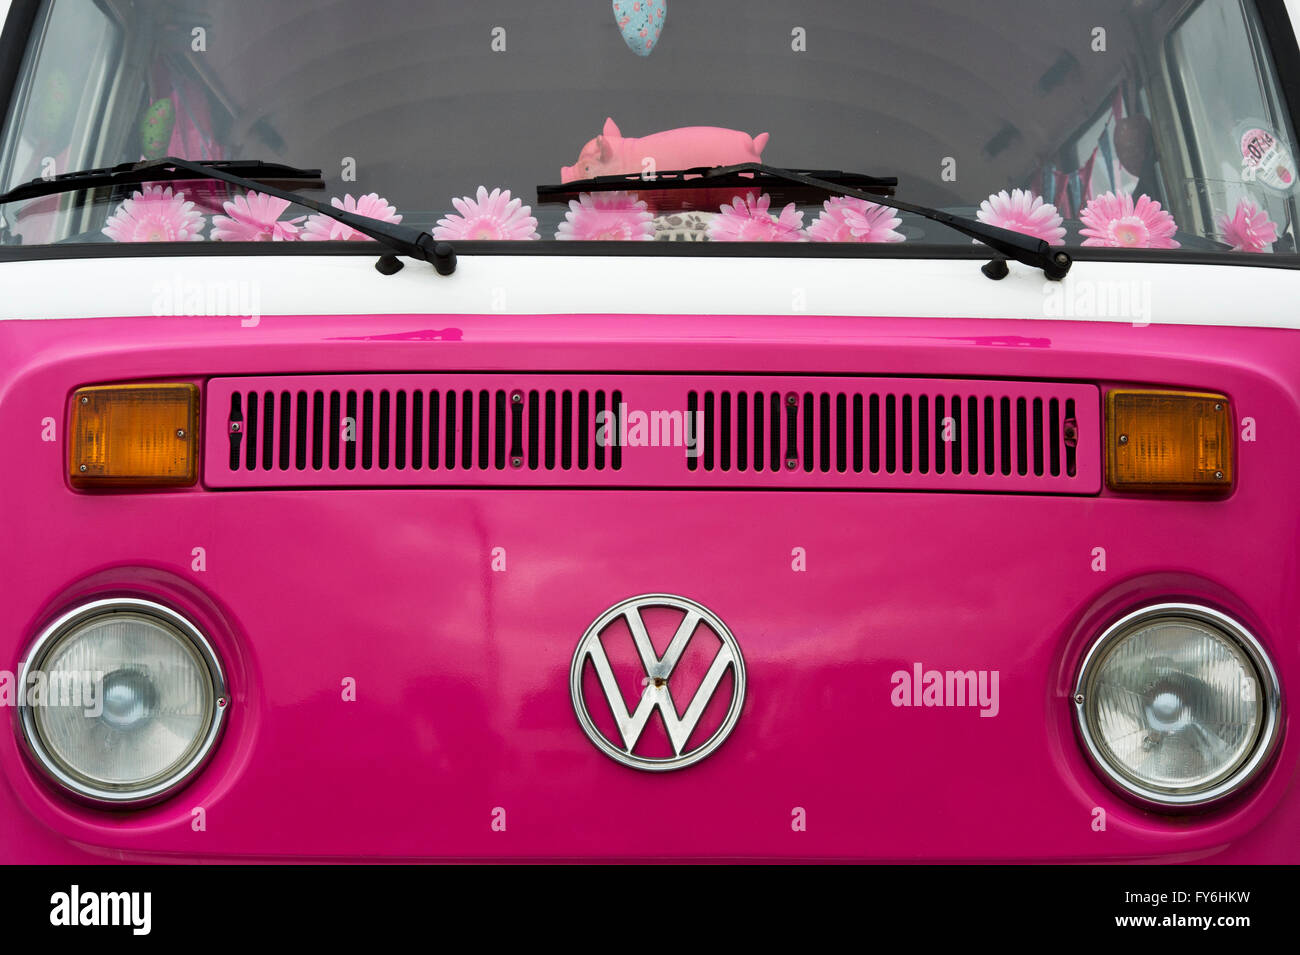 Pink VW Volkswagen camper van Stock Photo